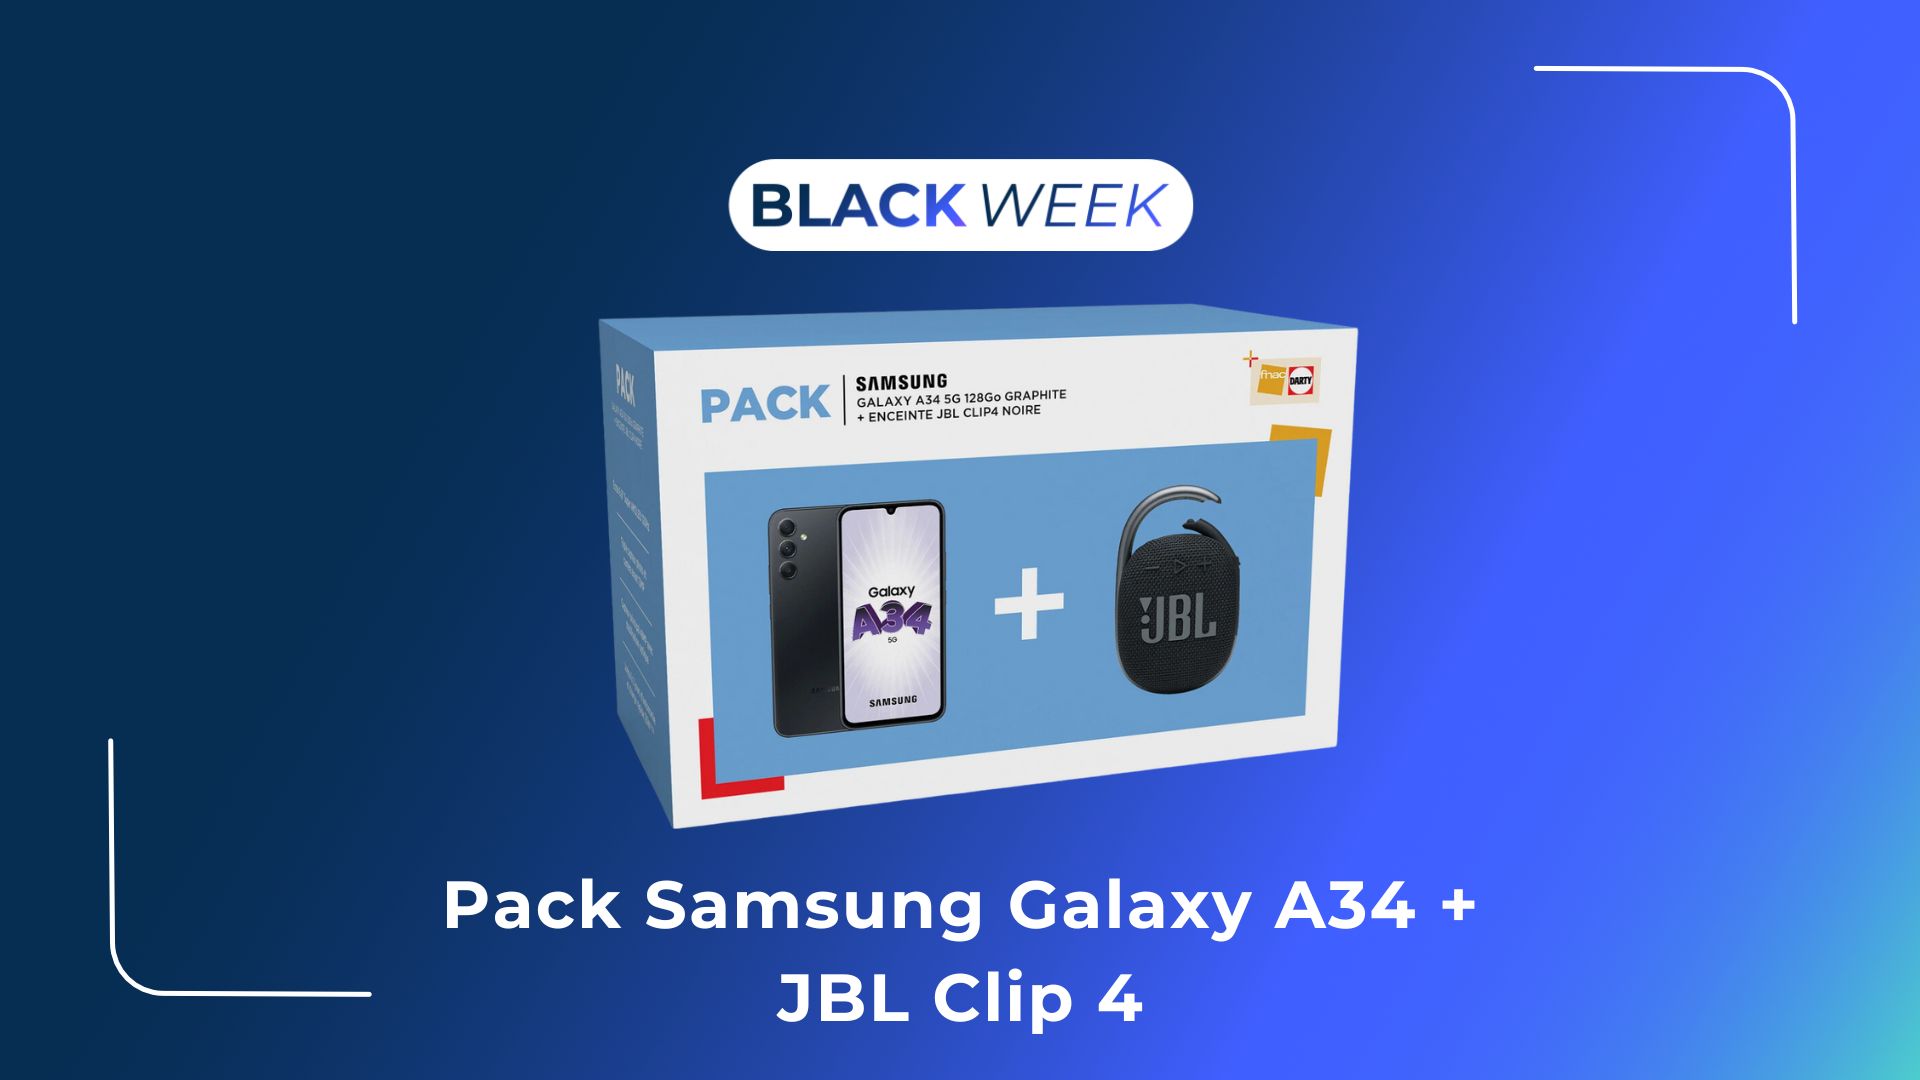 Le Samsung Galaxy A34 devient très abordable dans ce pack du Black